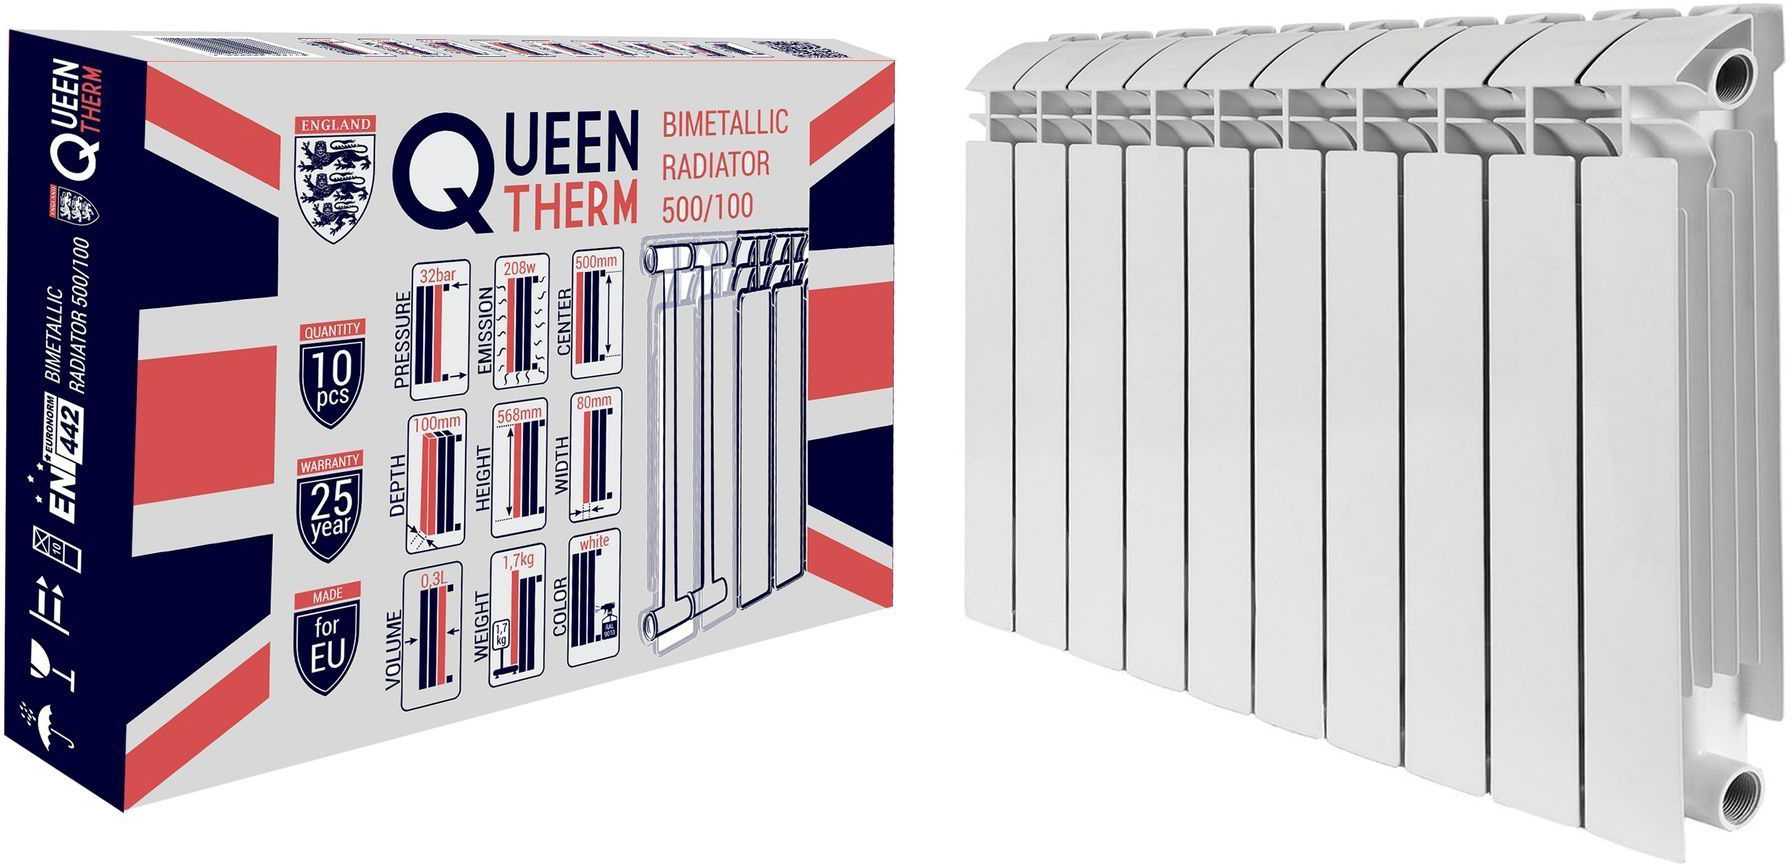 Характеристики радиатор для отопления Queen Therm 500/100 (кратно 10)